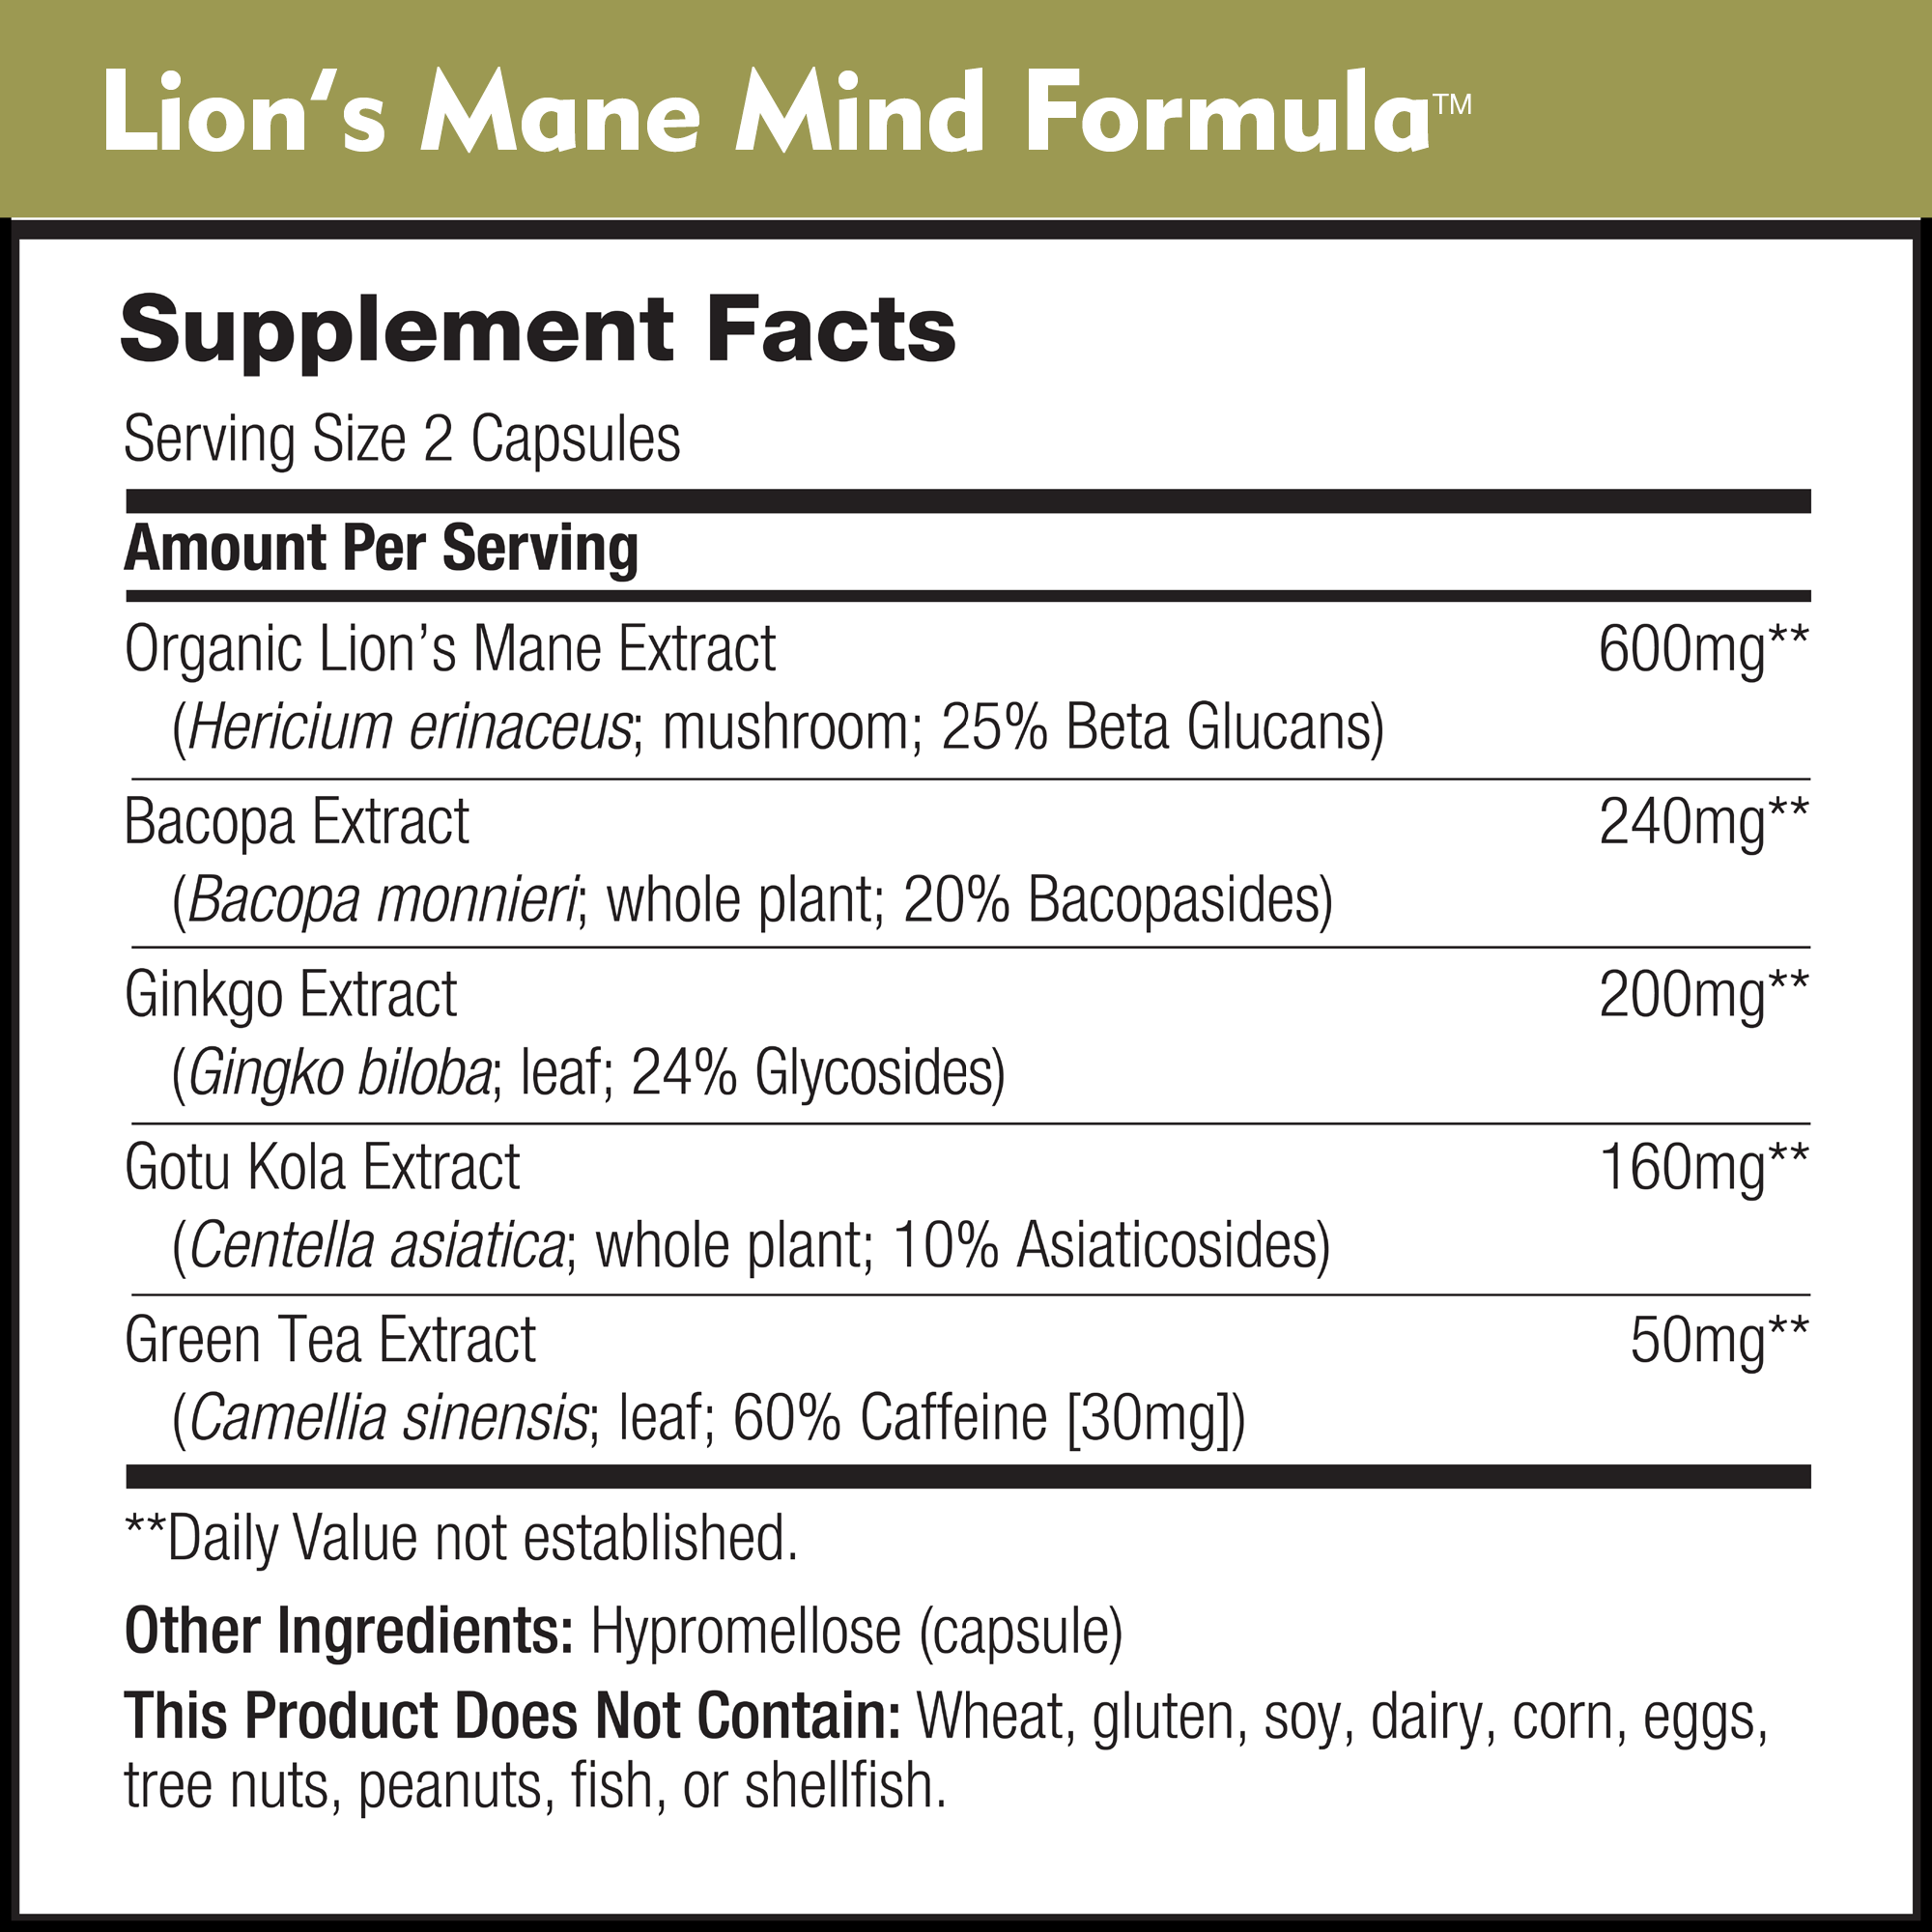 Lion's Mane Mind Formula